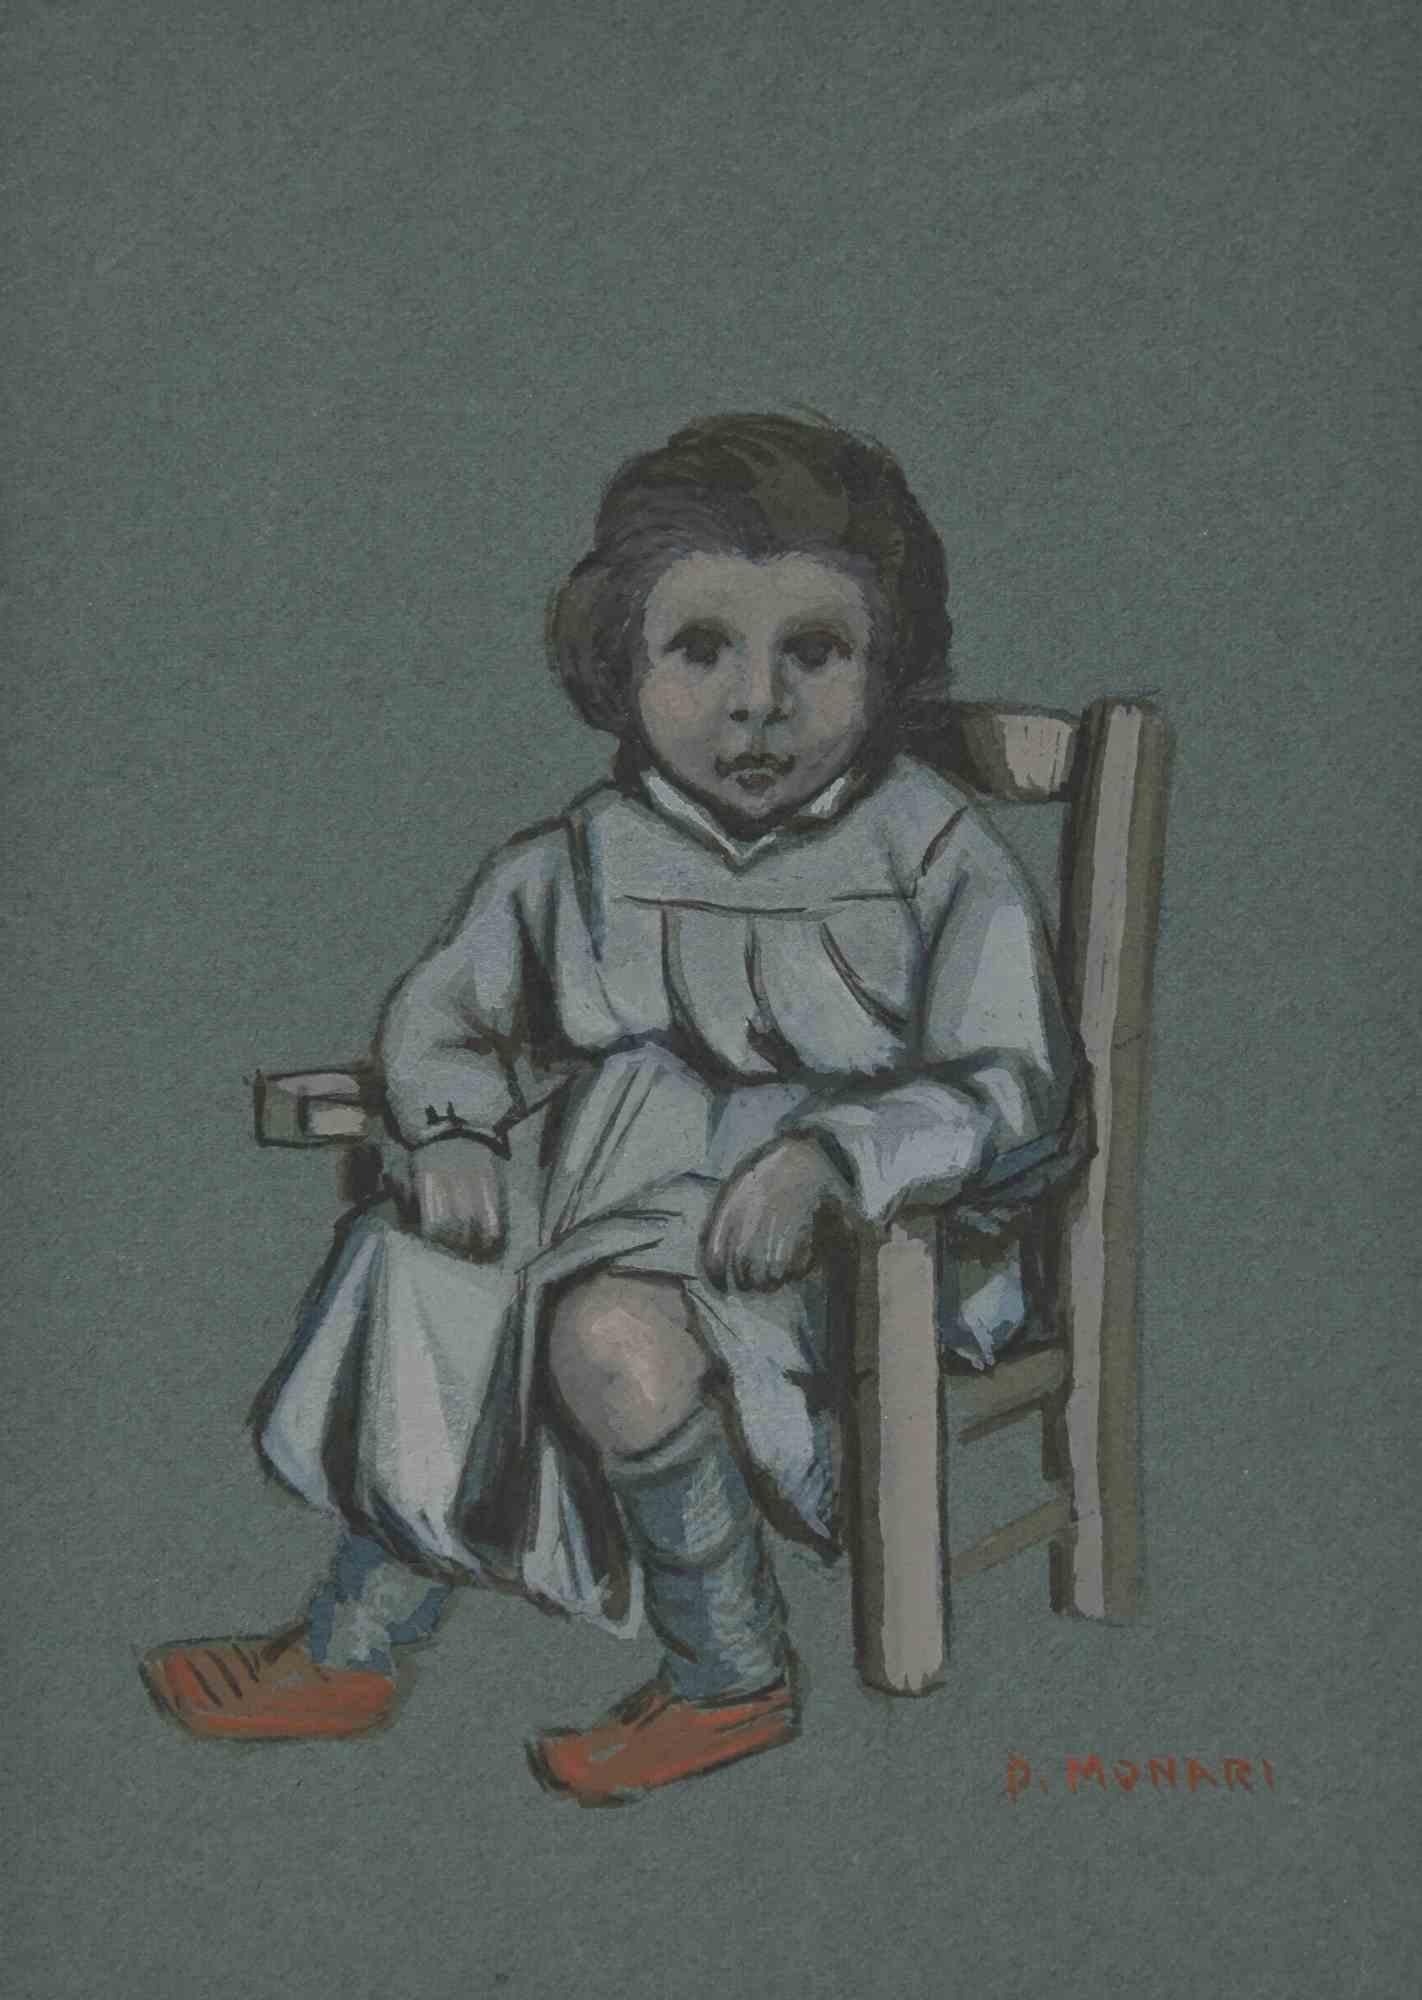 Das Baby ist eine Zeichnung in Bleistift, Aquarell und Bleiweiß, realisiert von  Augusto Monari im frühen 20. Jahrhundert.     

Handsigniert auf der Unterseite.     

Gute Bedingungen, darunter ein cremefarbenes Passepartout.     

Das Kunstwerk